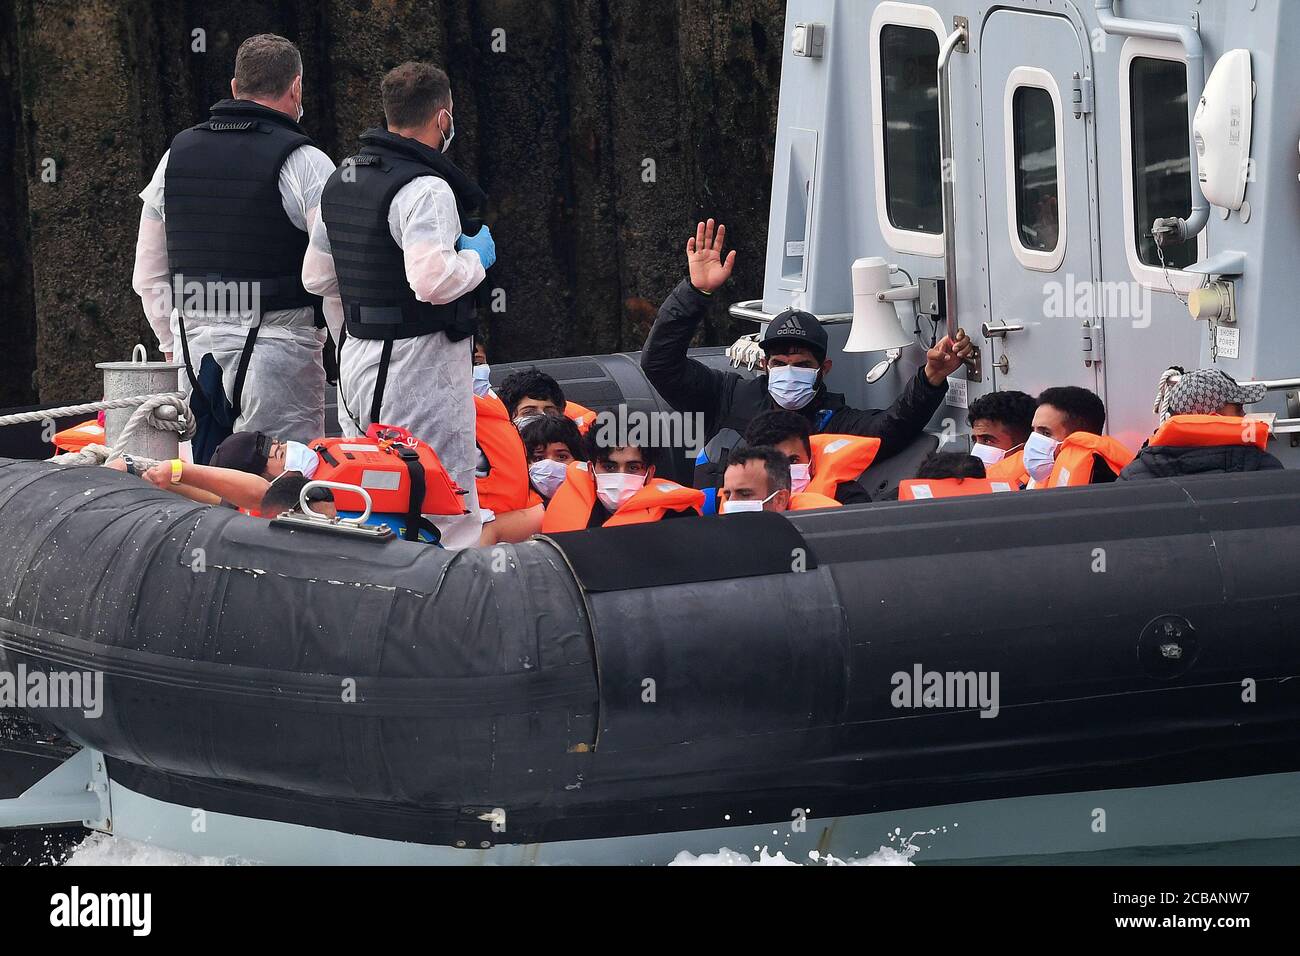 Eine Gruppe von Menschen, die als Migranten gedacht werden, eine winkt, werden von Grenzbeamten nach einer Reihe von kleinen Bootsvorfällen im Kanal heute in Dover, Kent, gebracht. Stockfoto